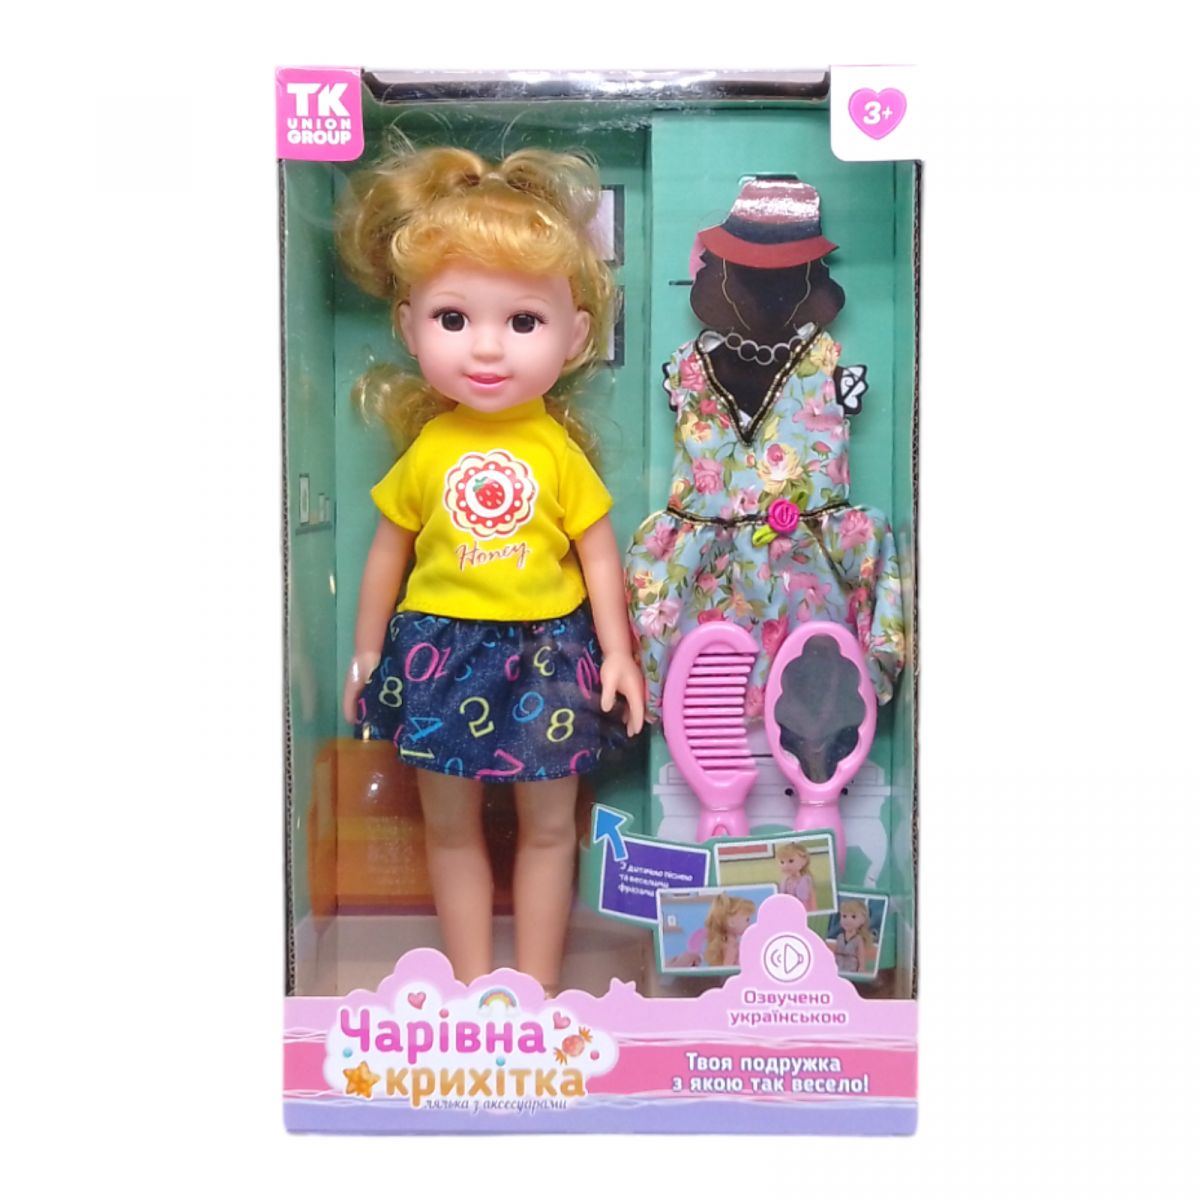 Лялька з аксесуарами "Чарівна крихітка" (вид 3)